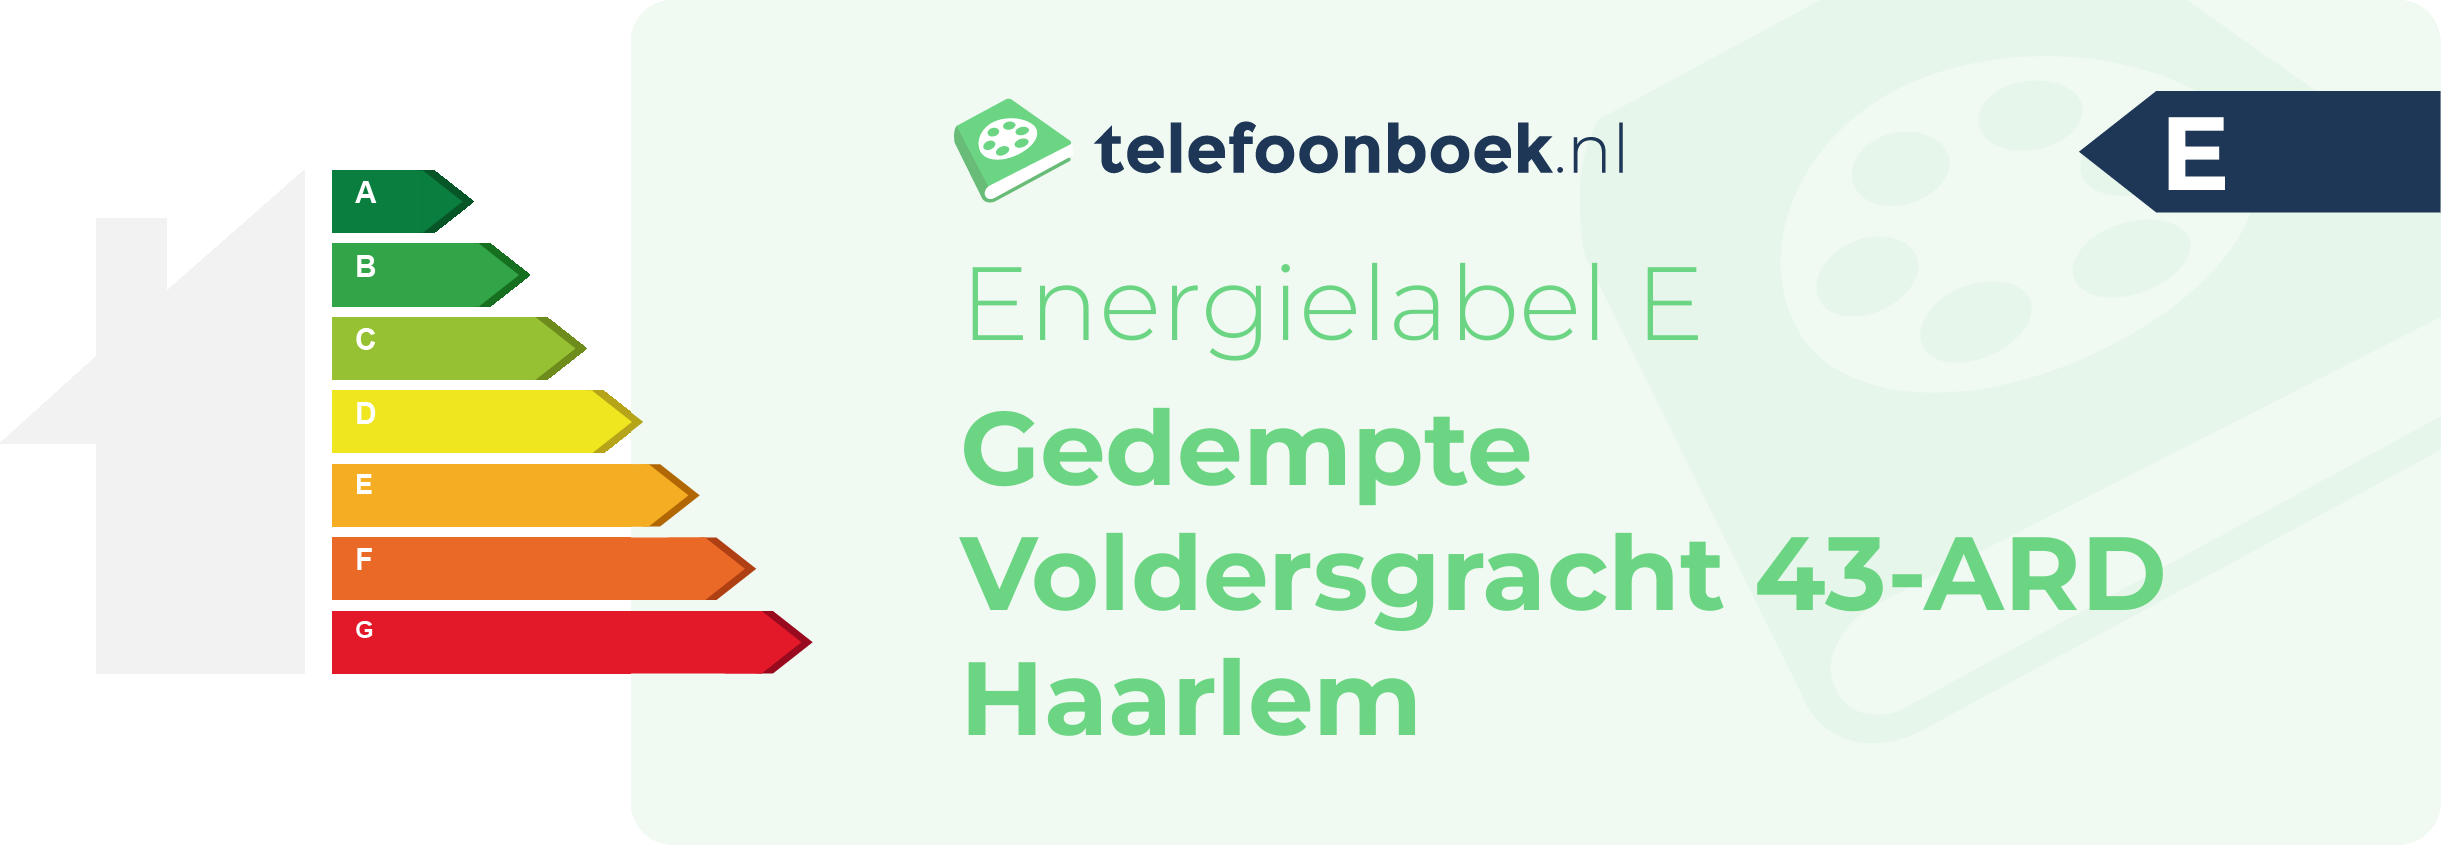 Energielabel Gedempte Voldersgracht 43-ARD Haarlem